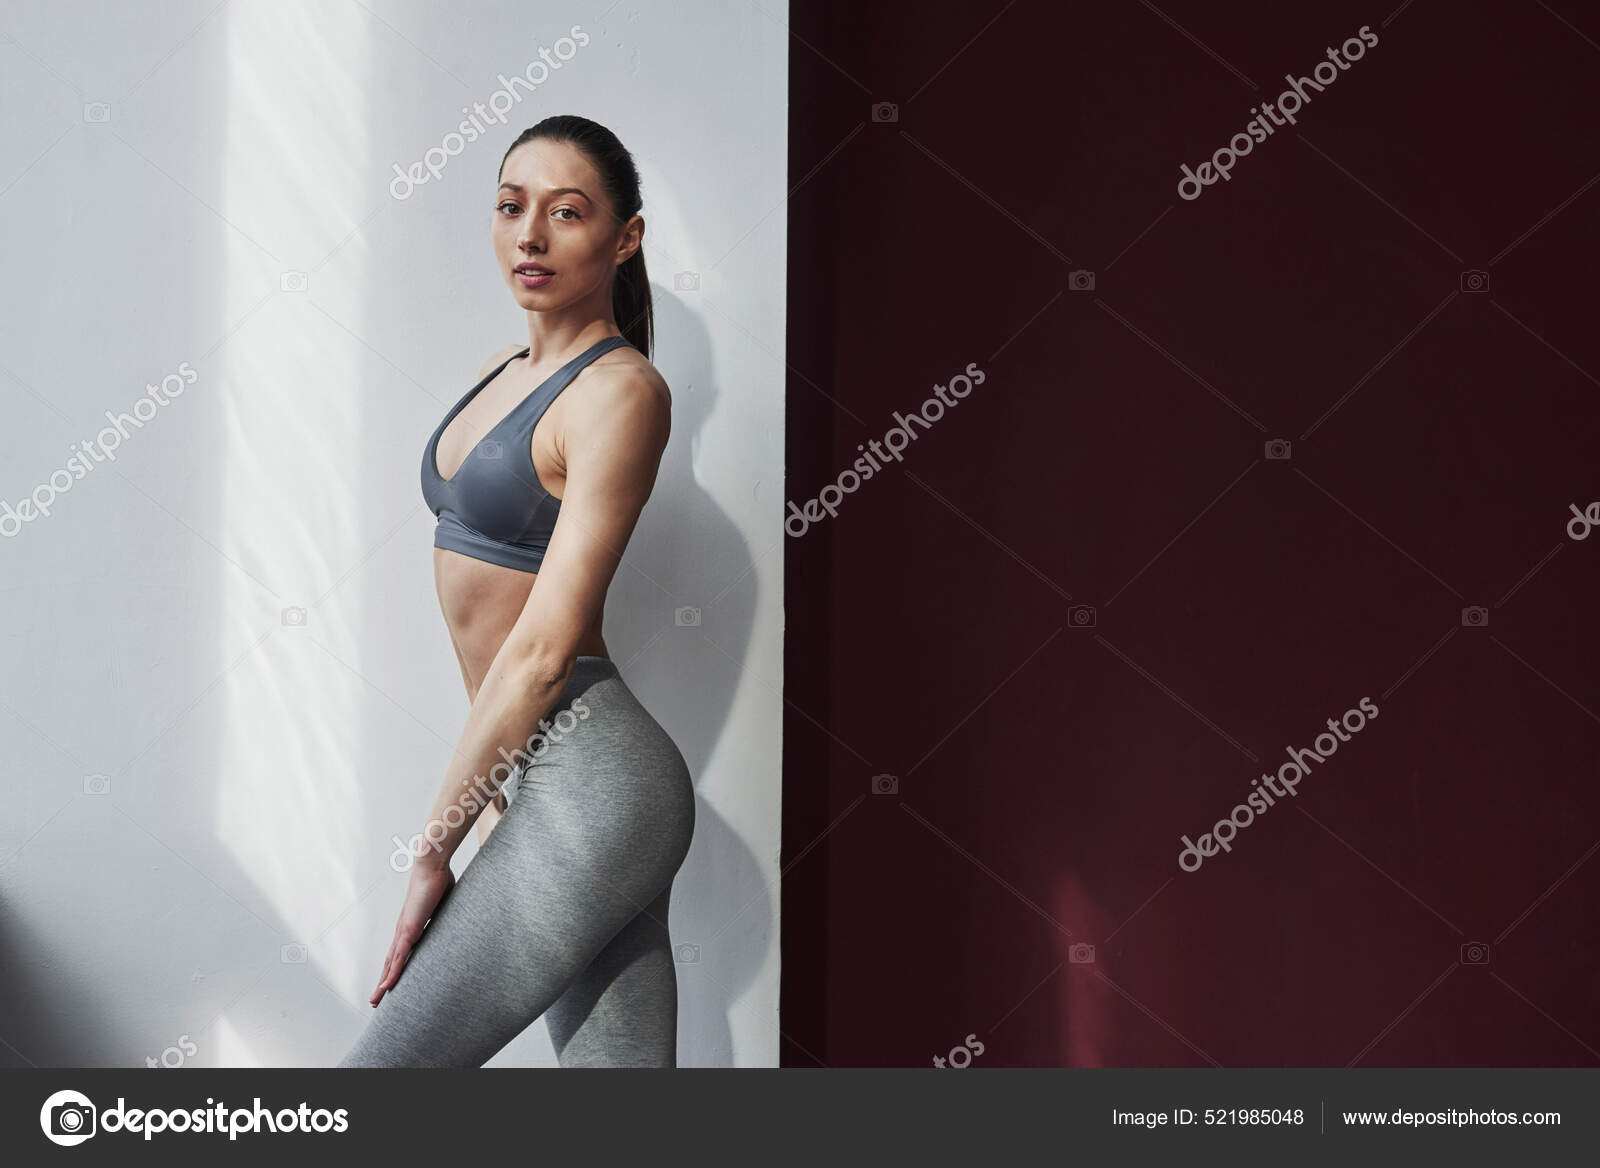 Iluminação Natural Mulher Bonita Com Boa Forma Corpo Fitness Posando fotos,  imagens de © myronstandret #521985048